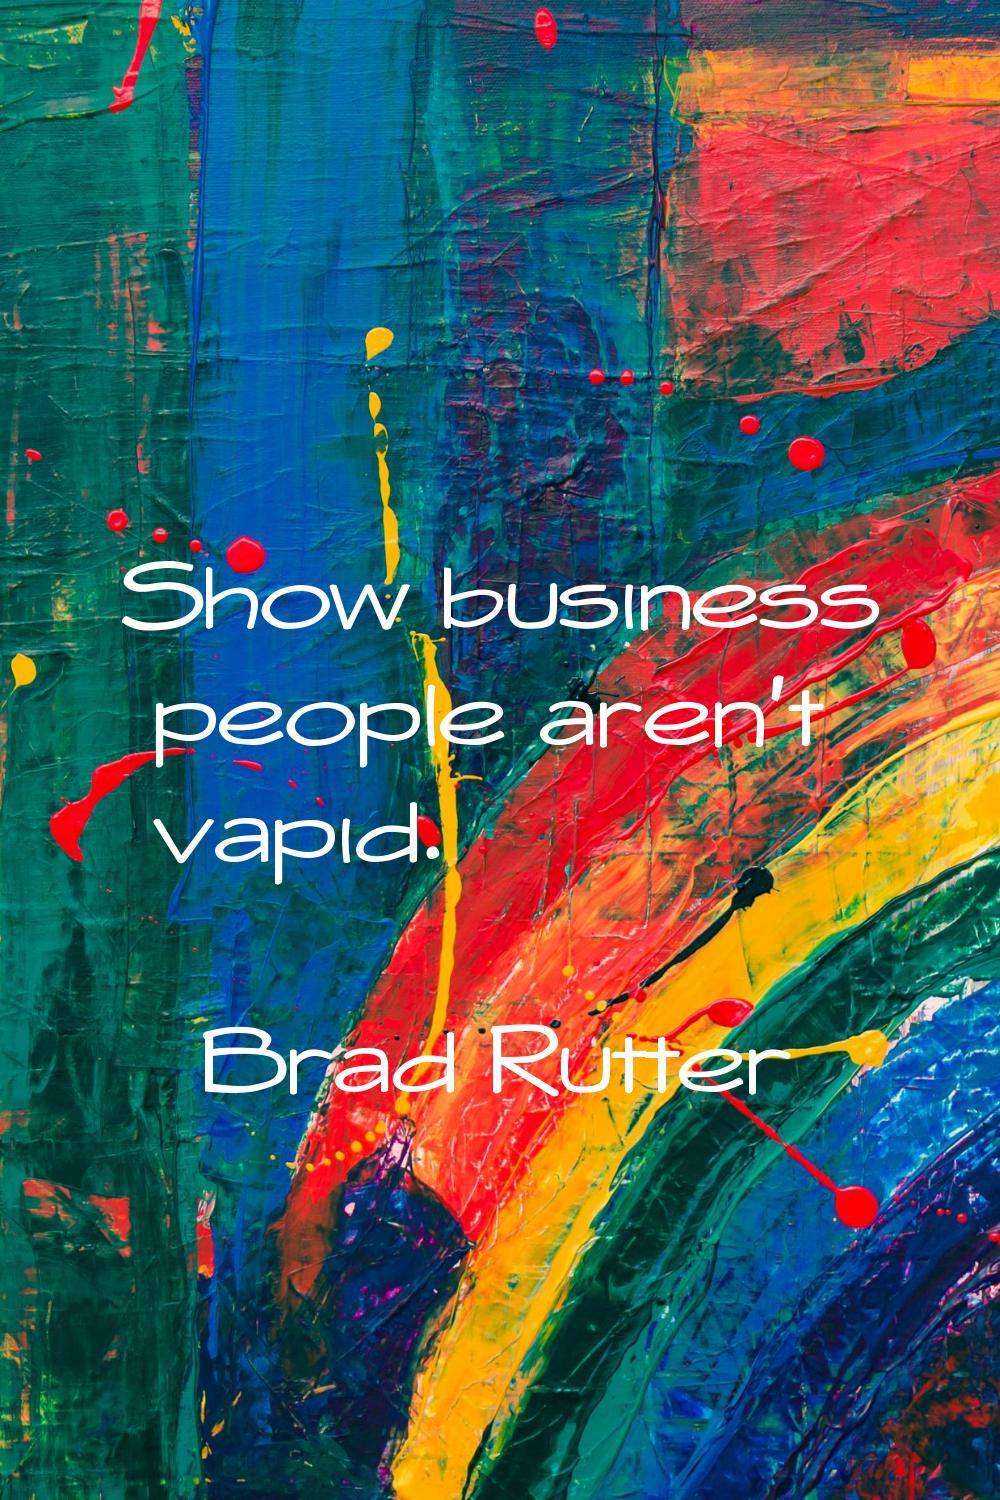 Show business people aren't vapid.